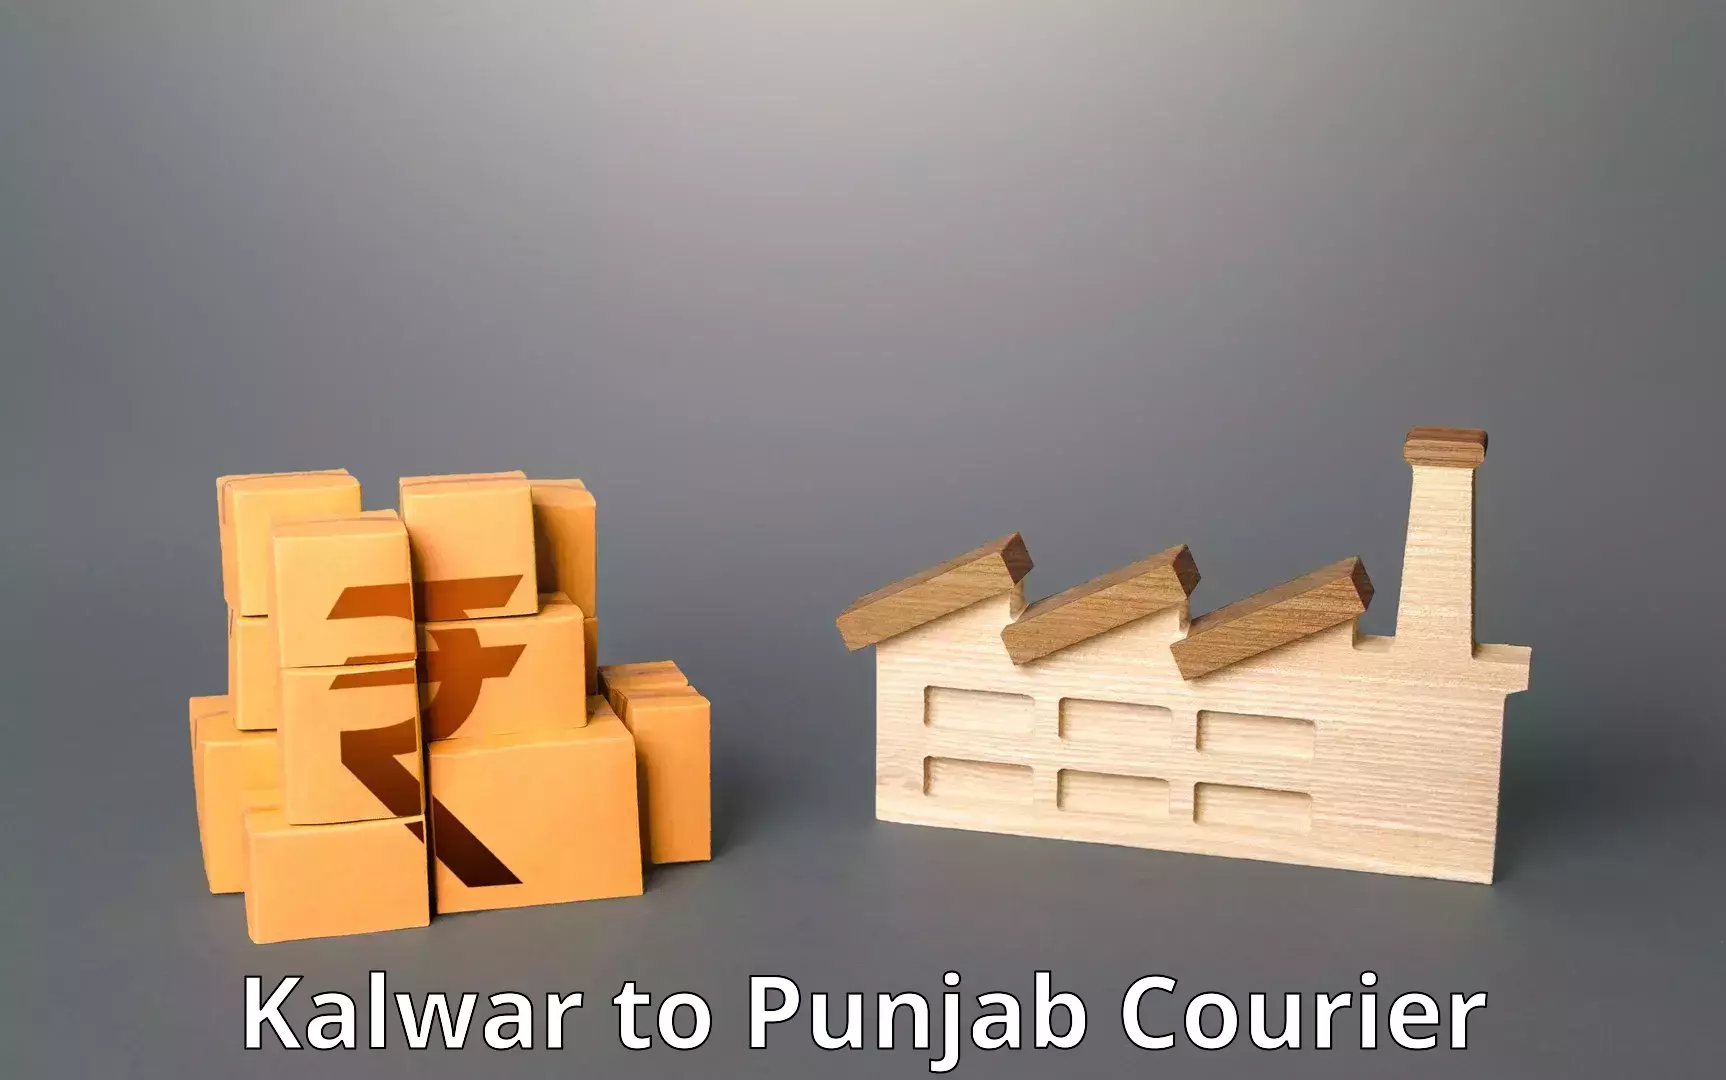 Efficient shipping platforms Kalwar to Jalandhar